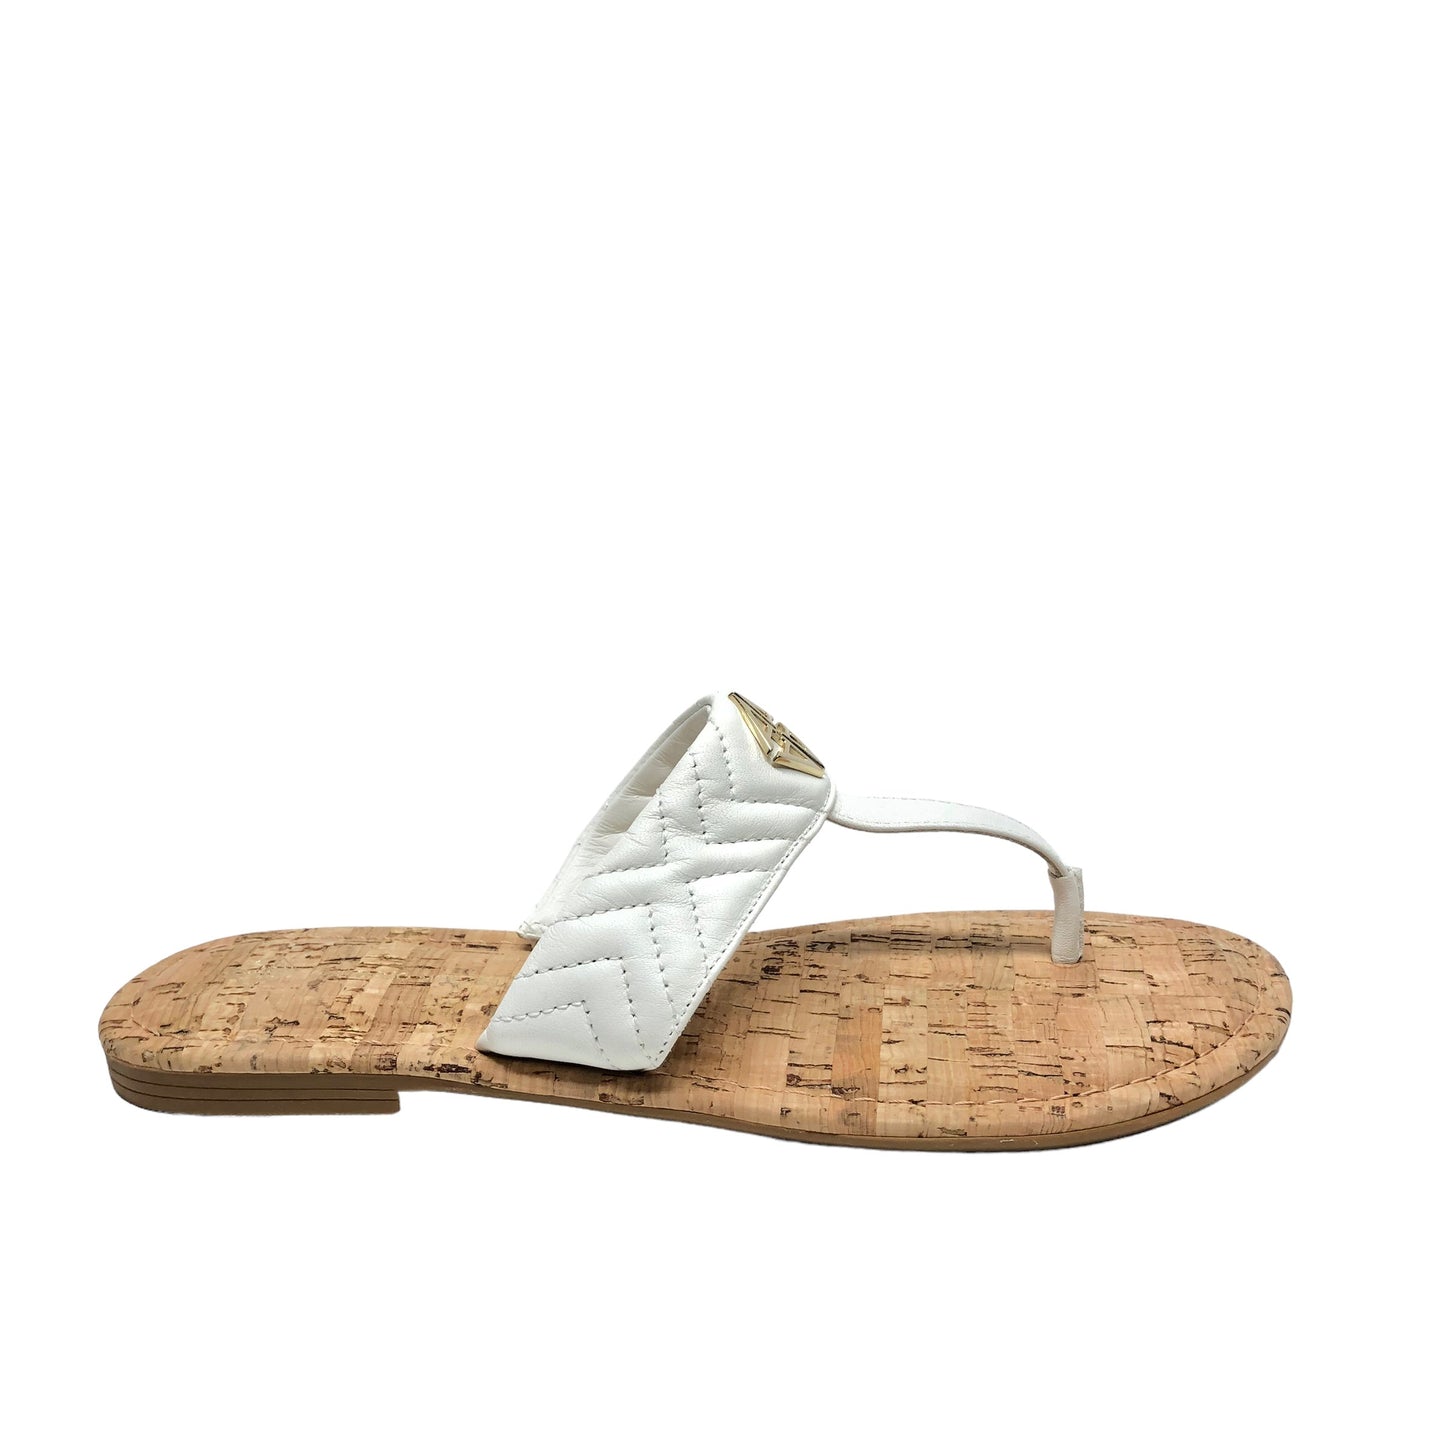 Ivory Sandals Flats Antonio Melani, Size 9.5